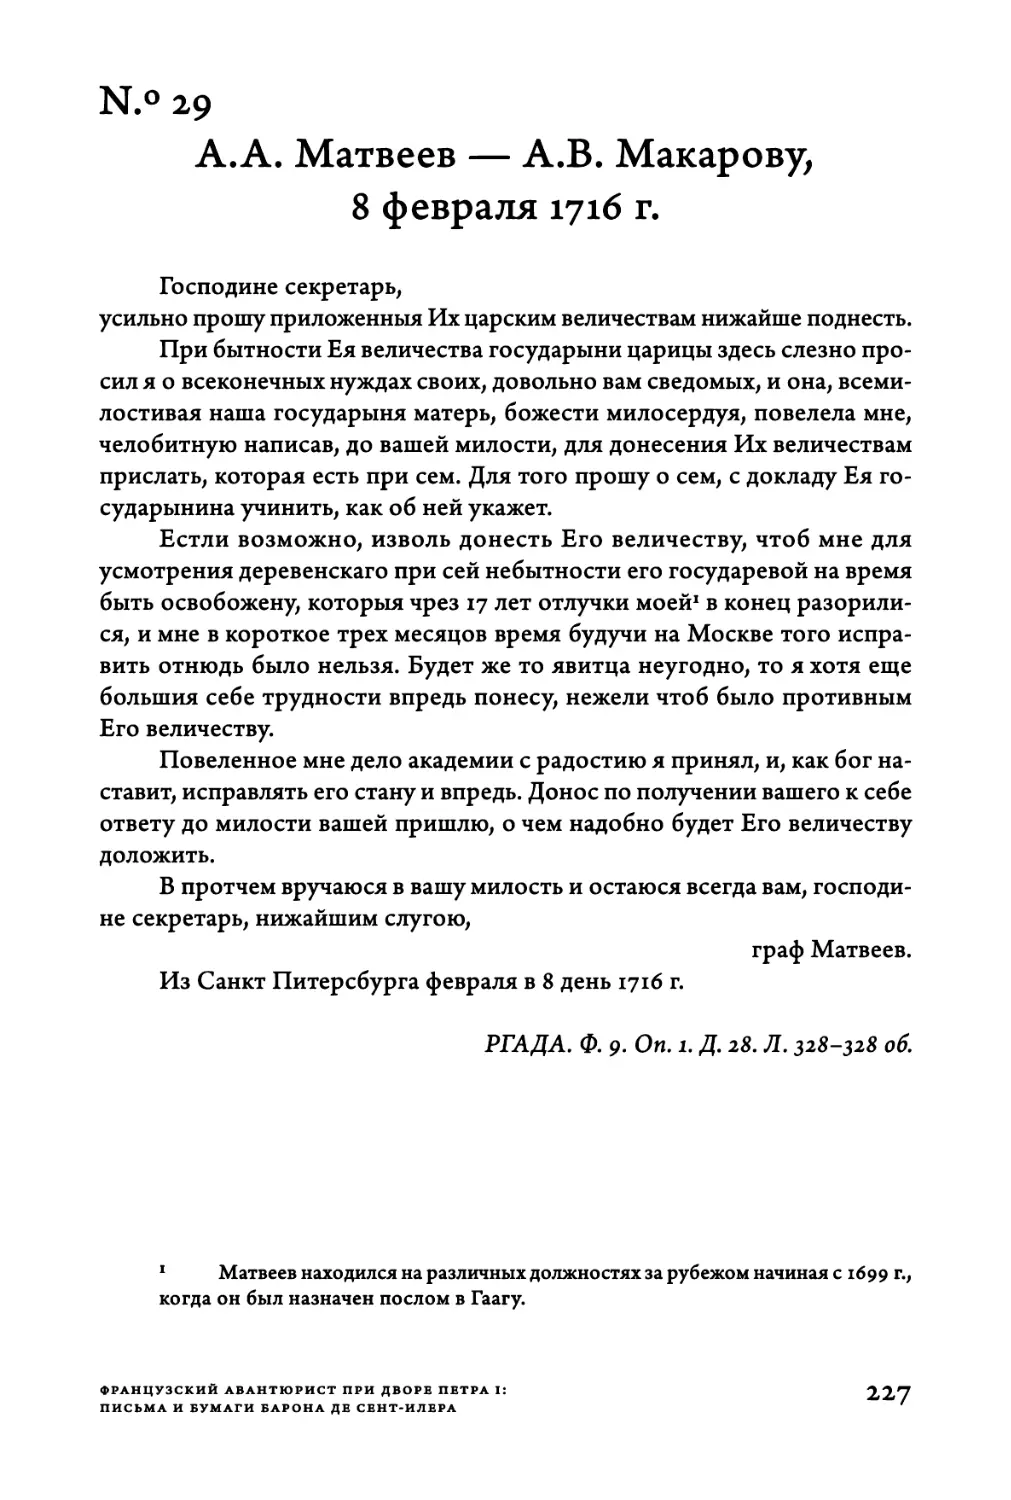 Ν.°29. A.A. Матвеев — A.B. Макарову, 8 февраля 1716 г.